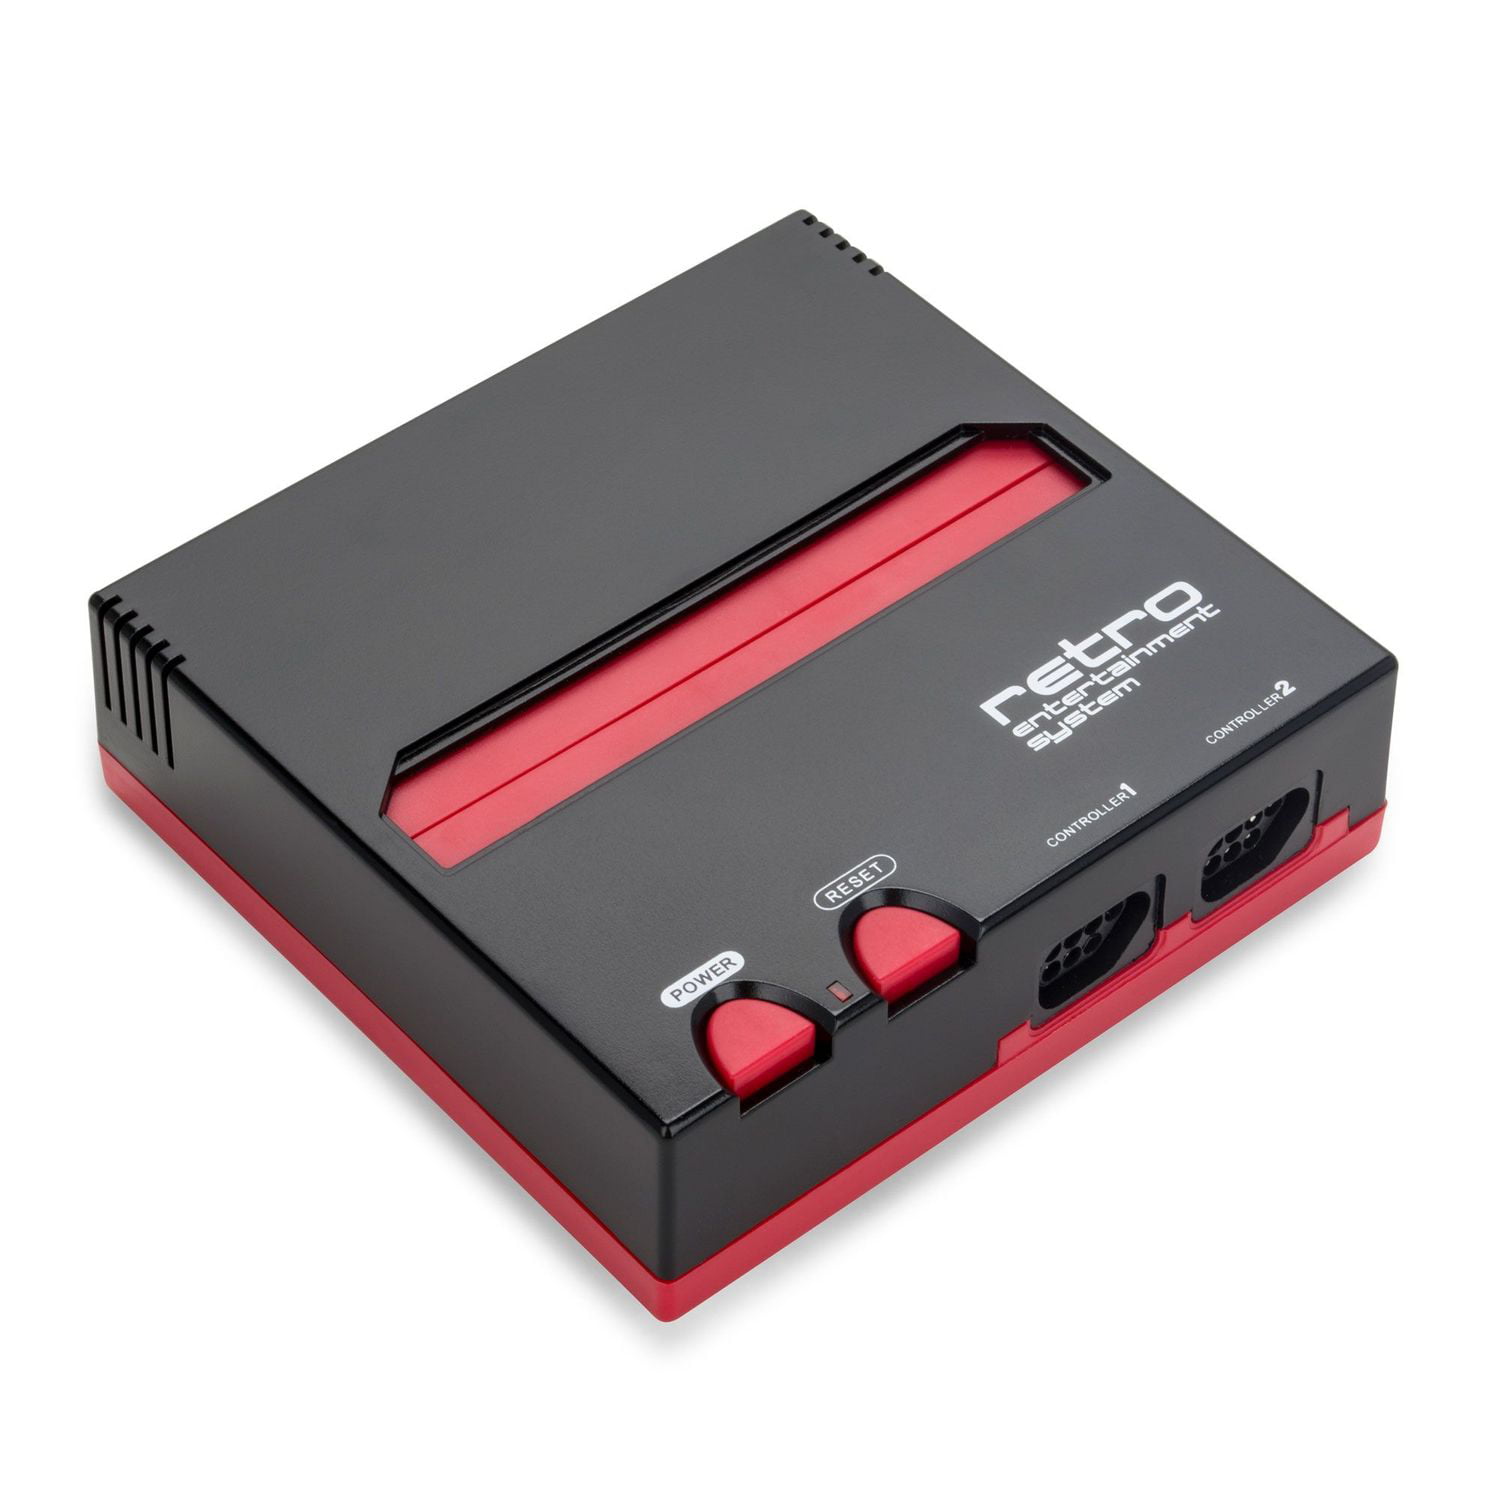 strække bypass Vise dig Retro-Bit Top Loader 8-bit Console For Nintendo NES Games, Black/Red -  Walmart.com